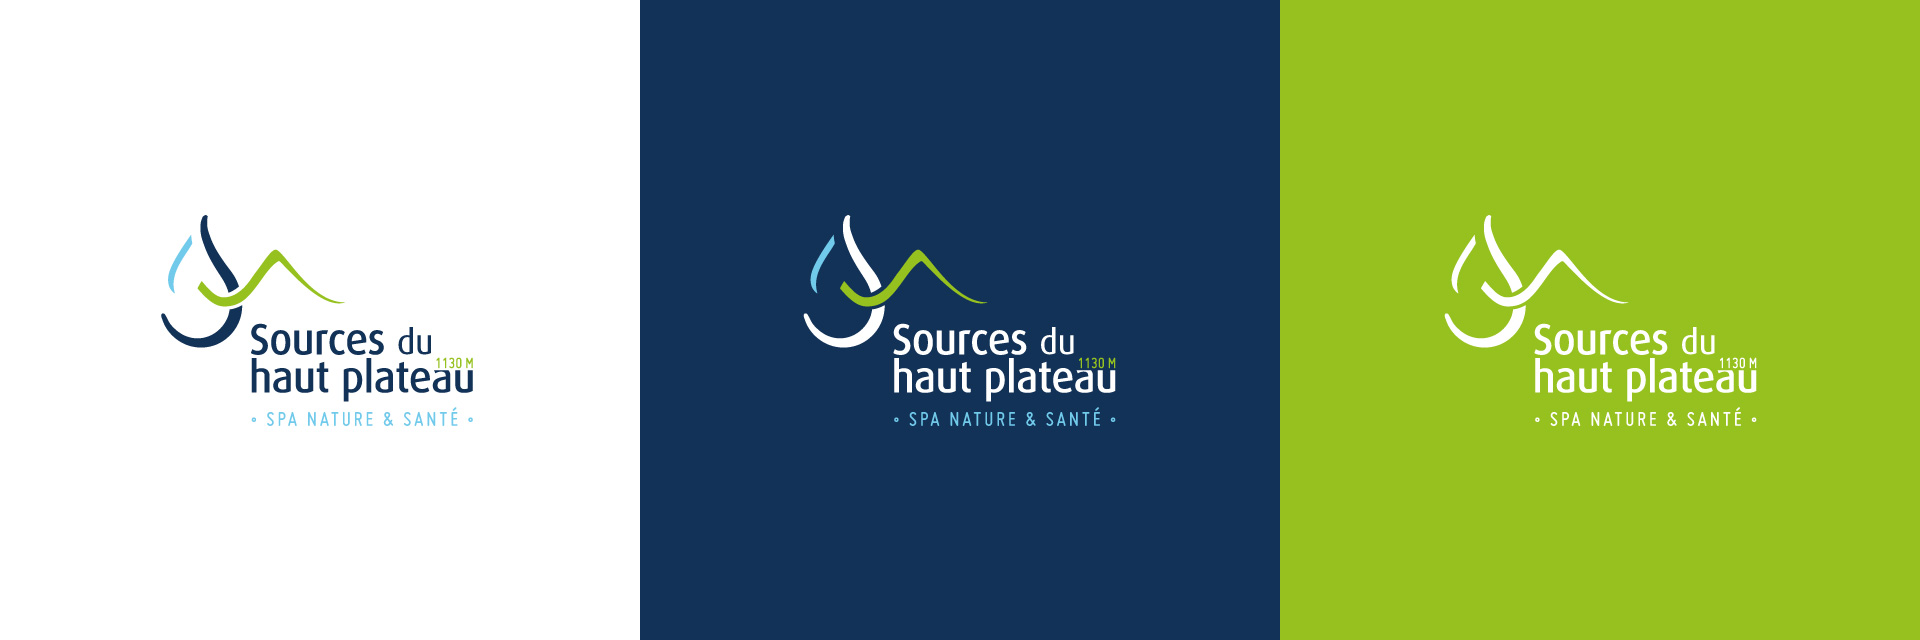 Ceéation du logo des Sources du haut plateau créé par studio N°3